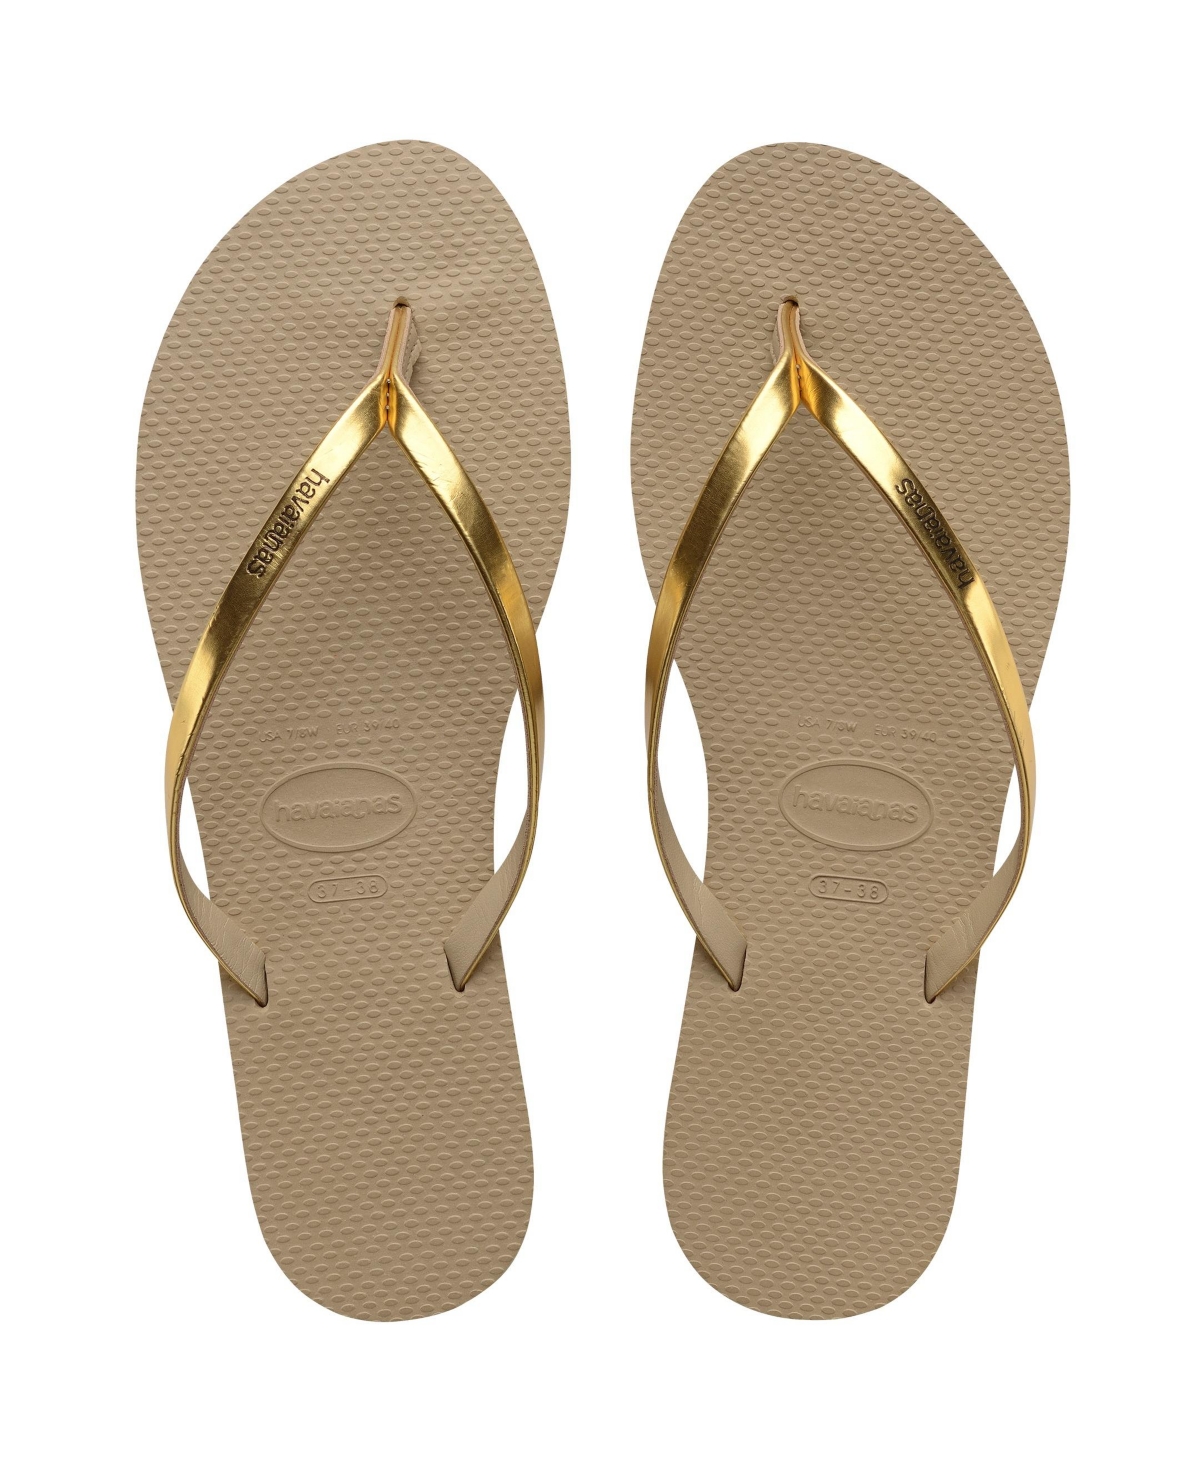 Shop Havaianas Women's You Metallic Flip Flop Sandals In Golden Sand Metallic